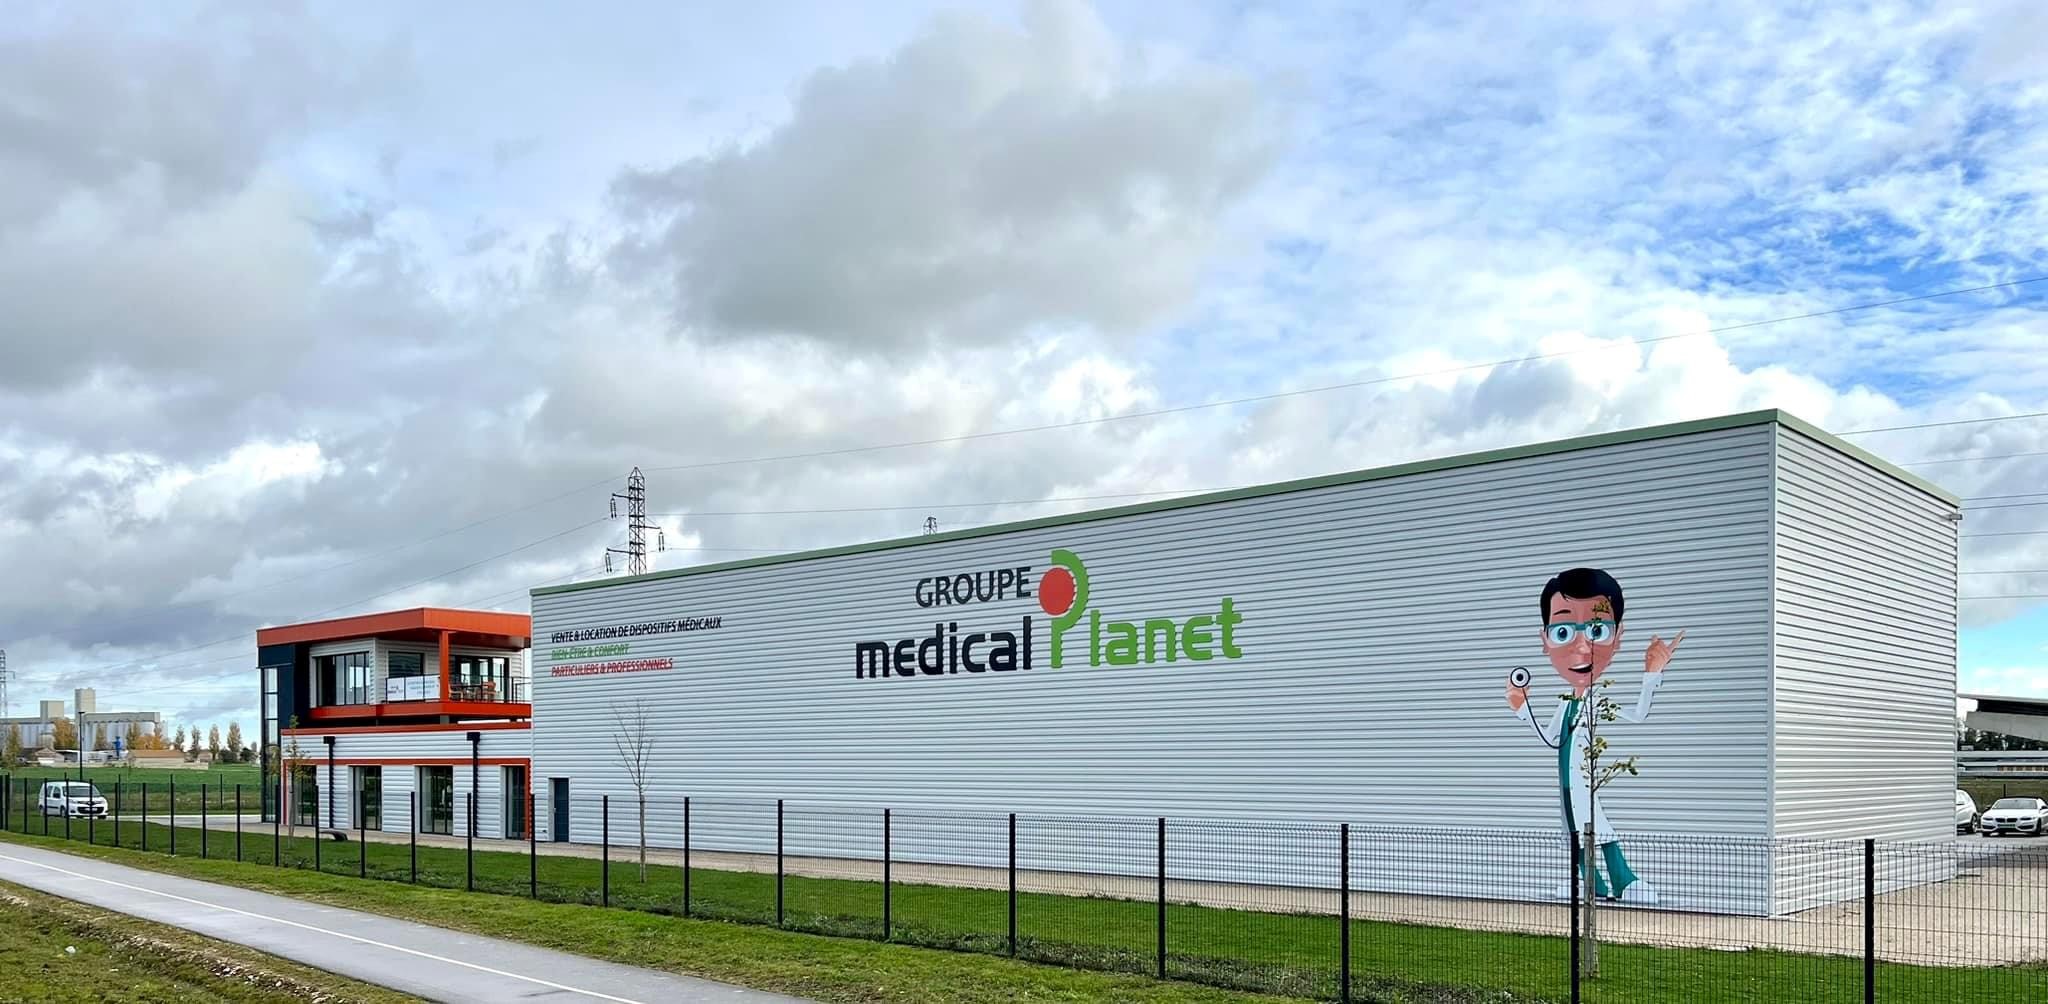 Nouvel enseigne magasin du magasin Medical Planet Beaune spécialisé dans la vente et location de dispositfs médicaux.